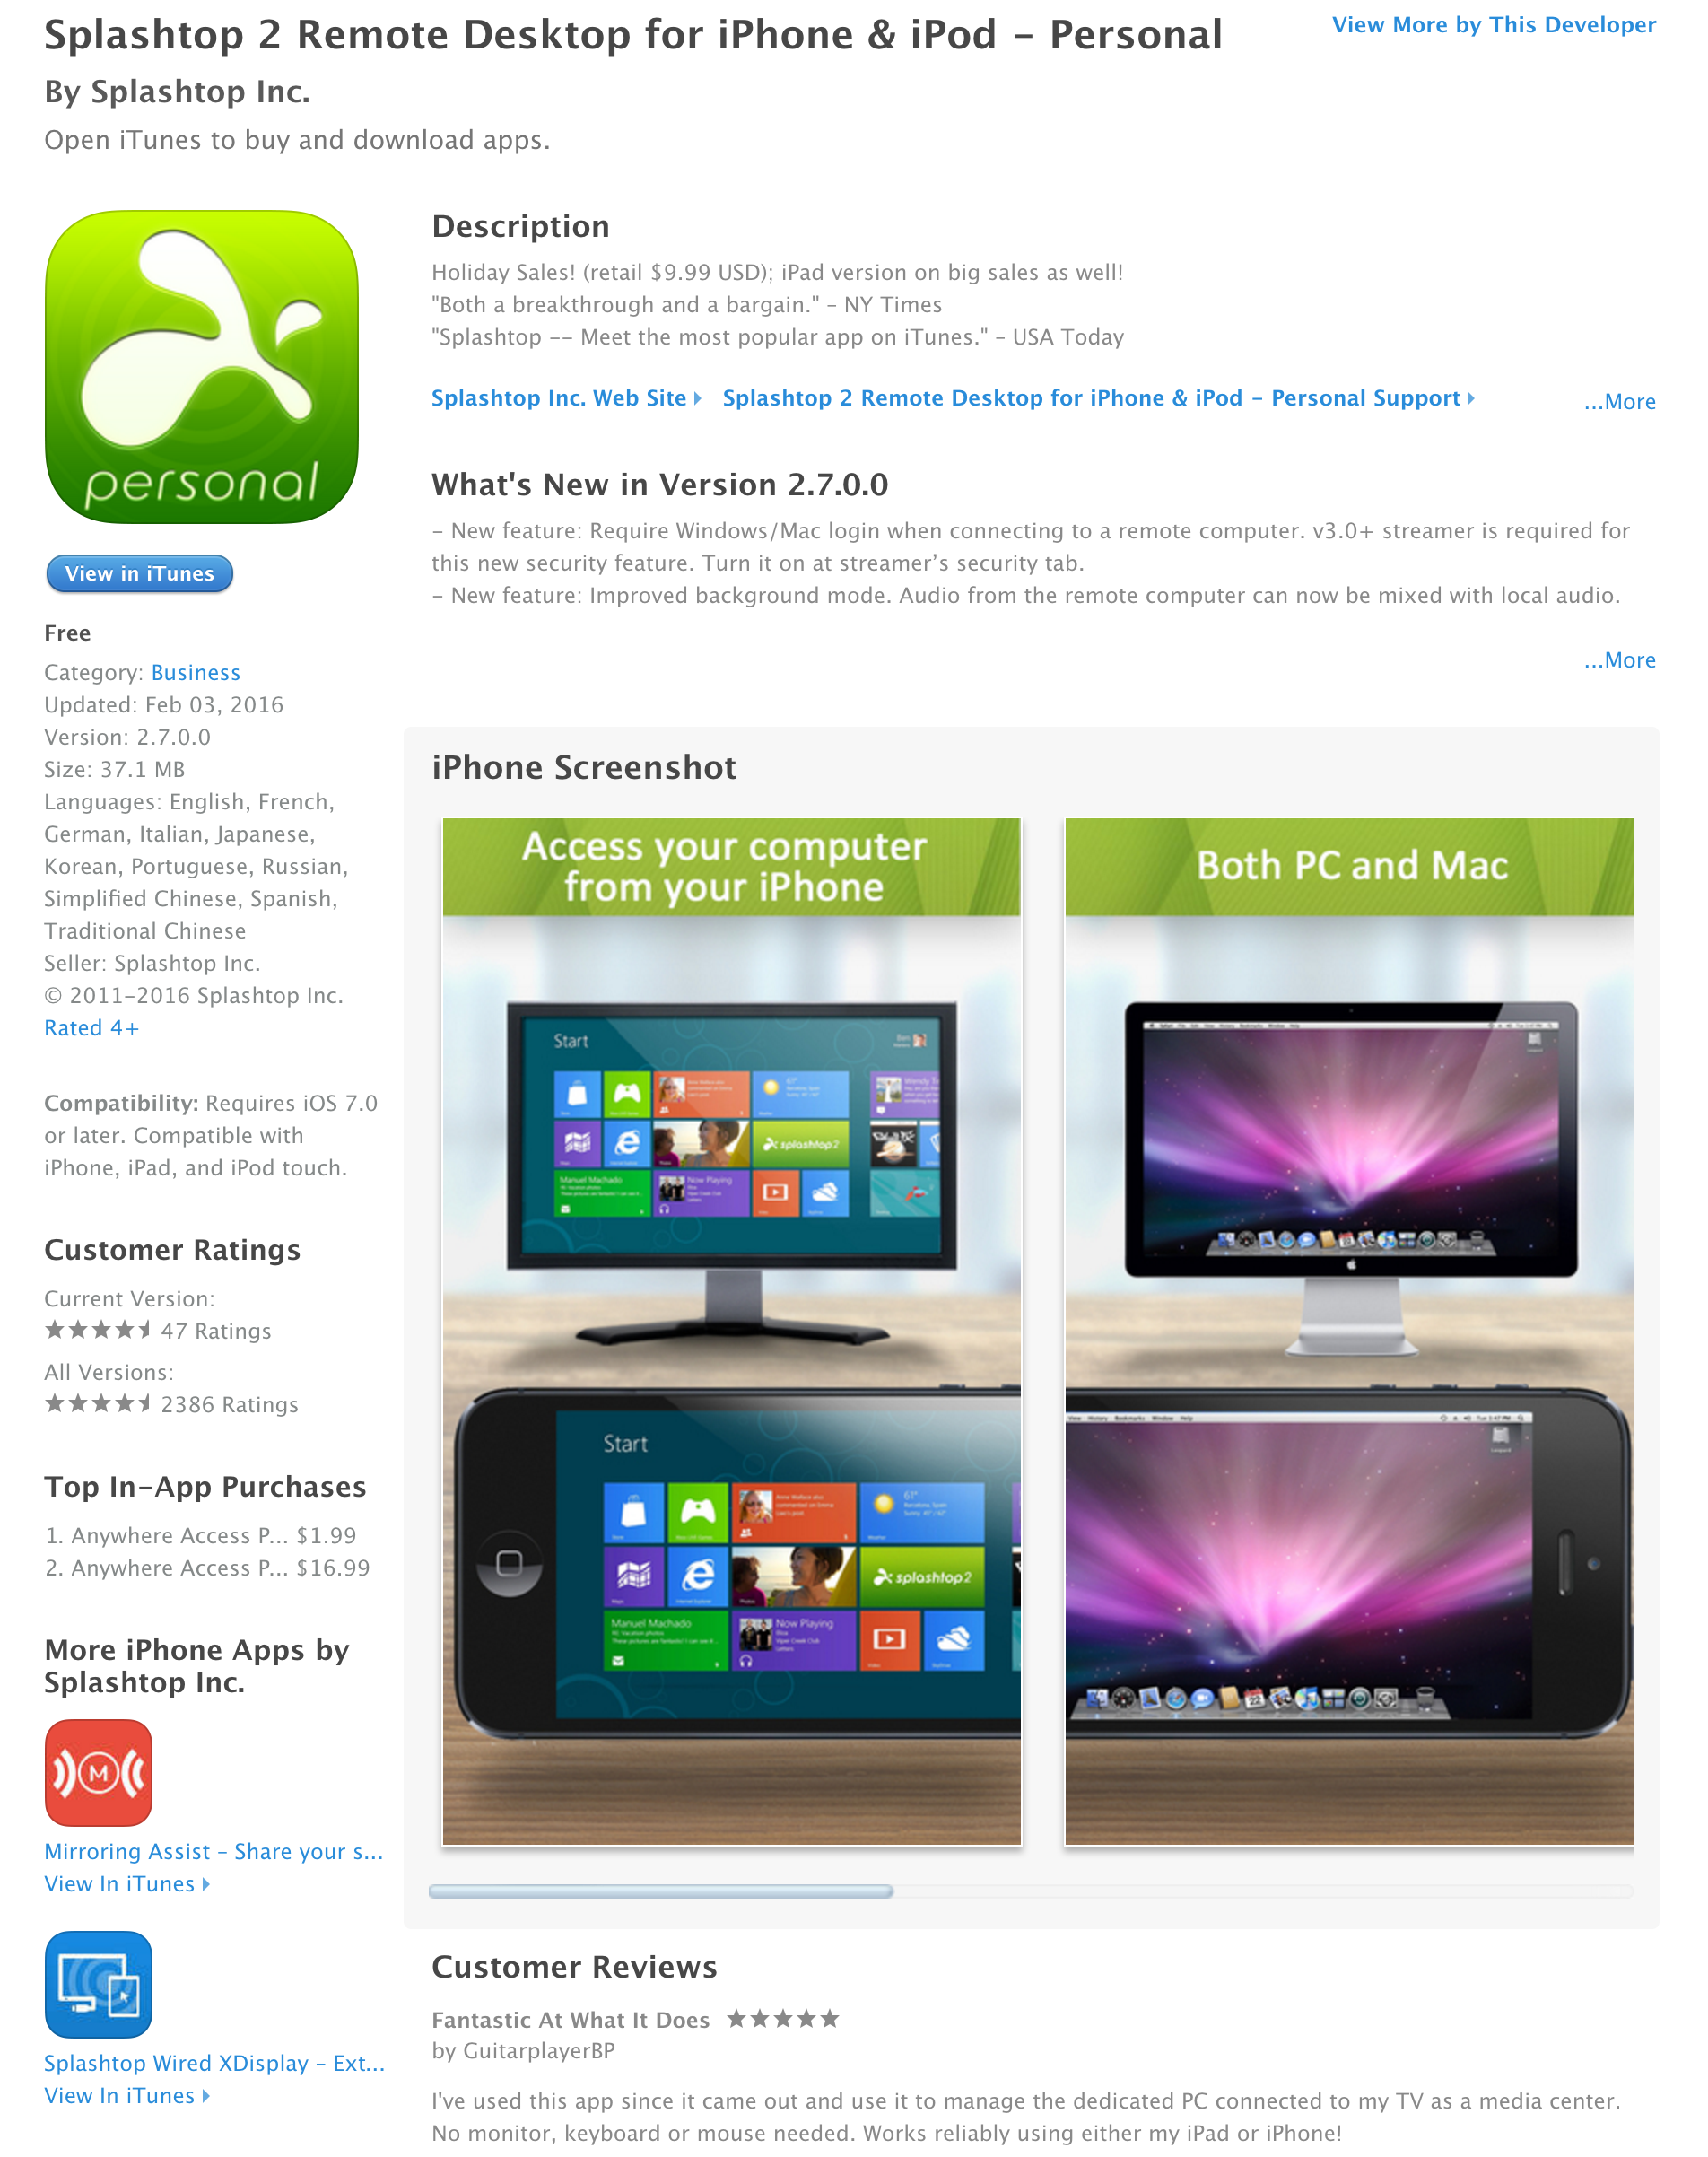 splashtop ipad app review